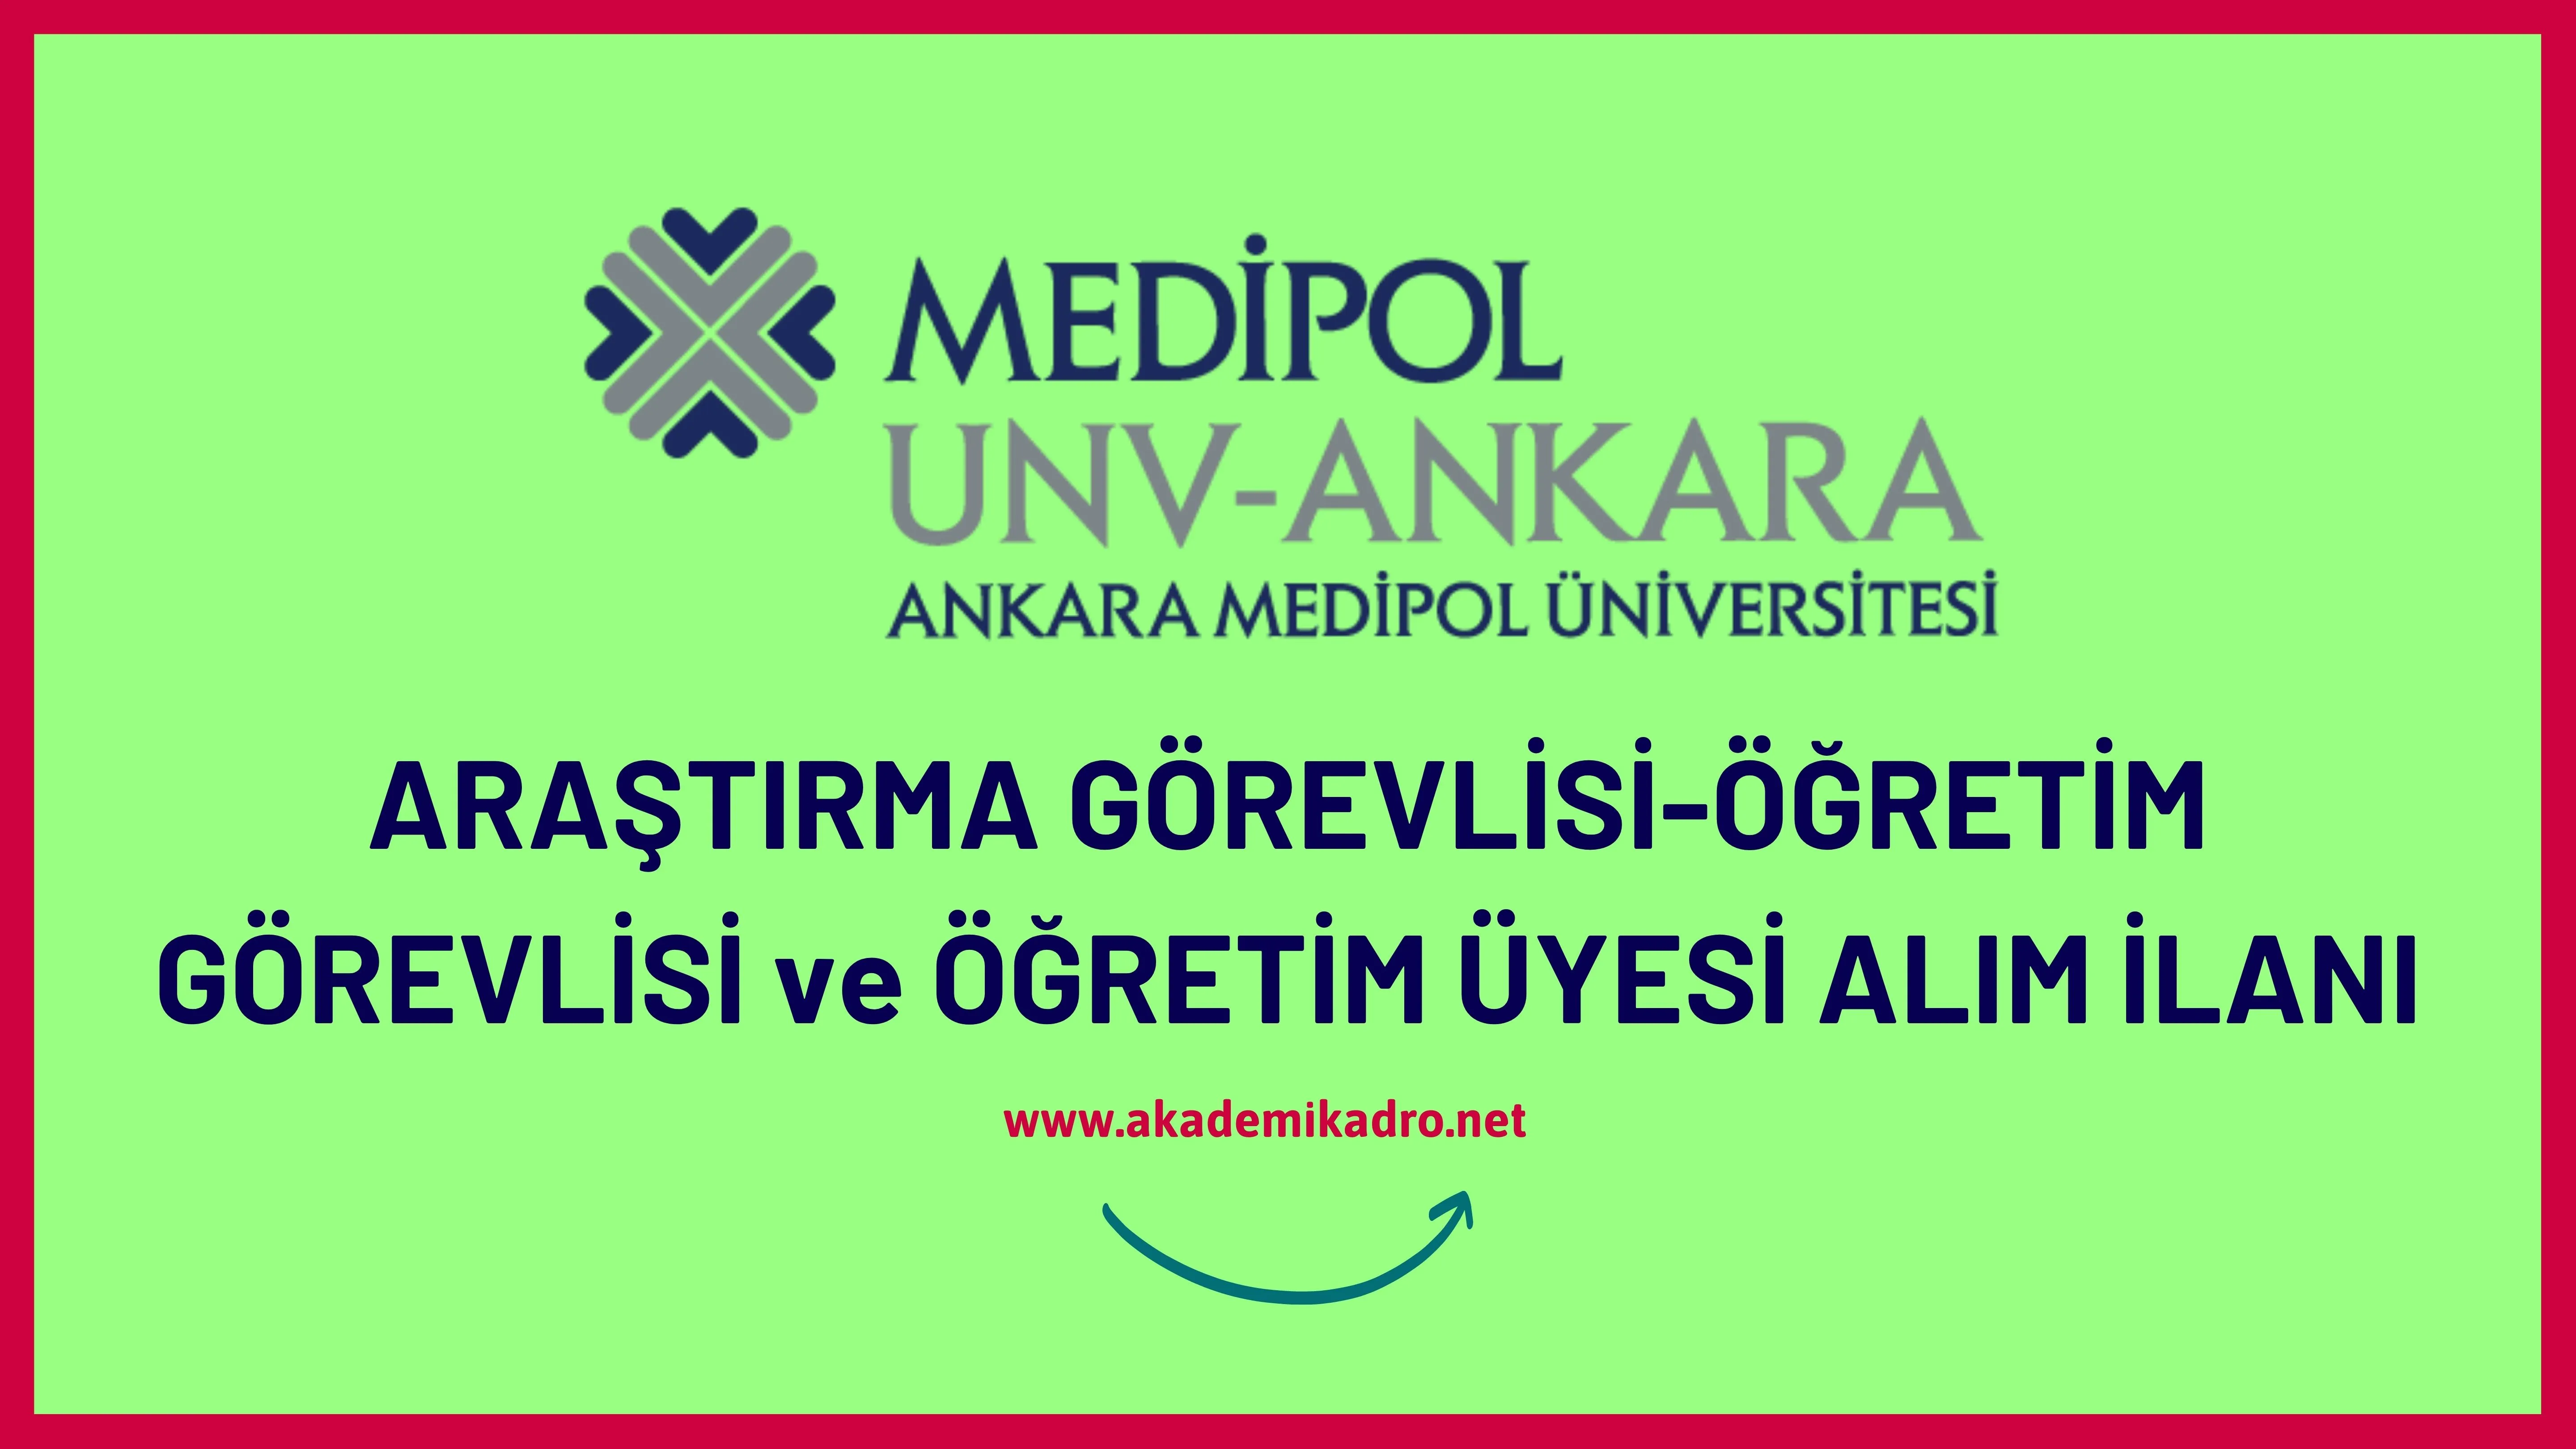 Ankara Medipol Üniversitesi 28 öğretim üyesi, 10 Araştırma görevlisi ve 2 Öğretim görevlisi alacaktır.